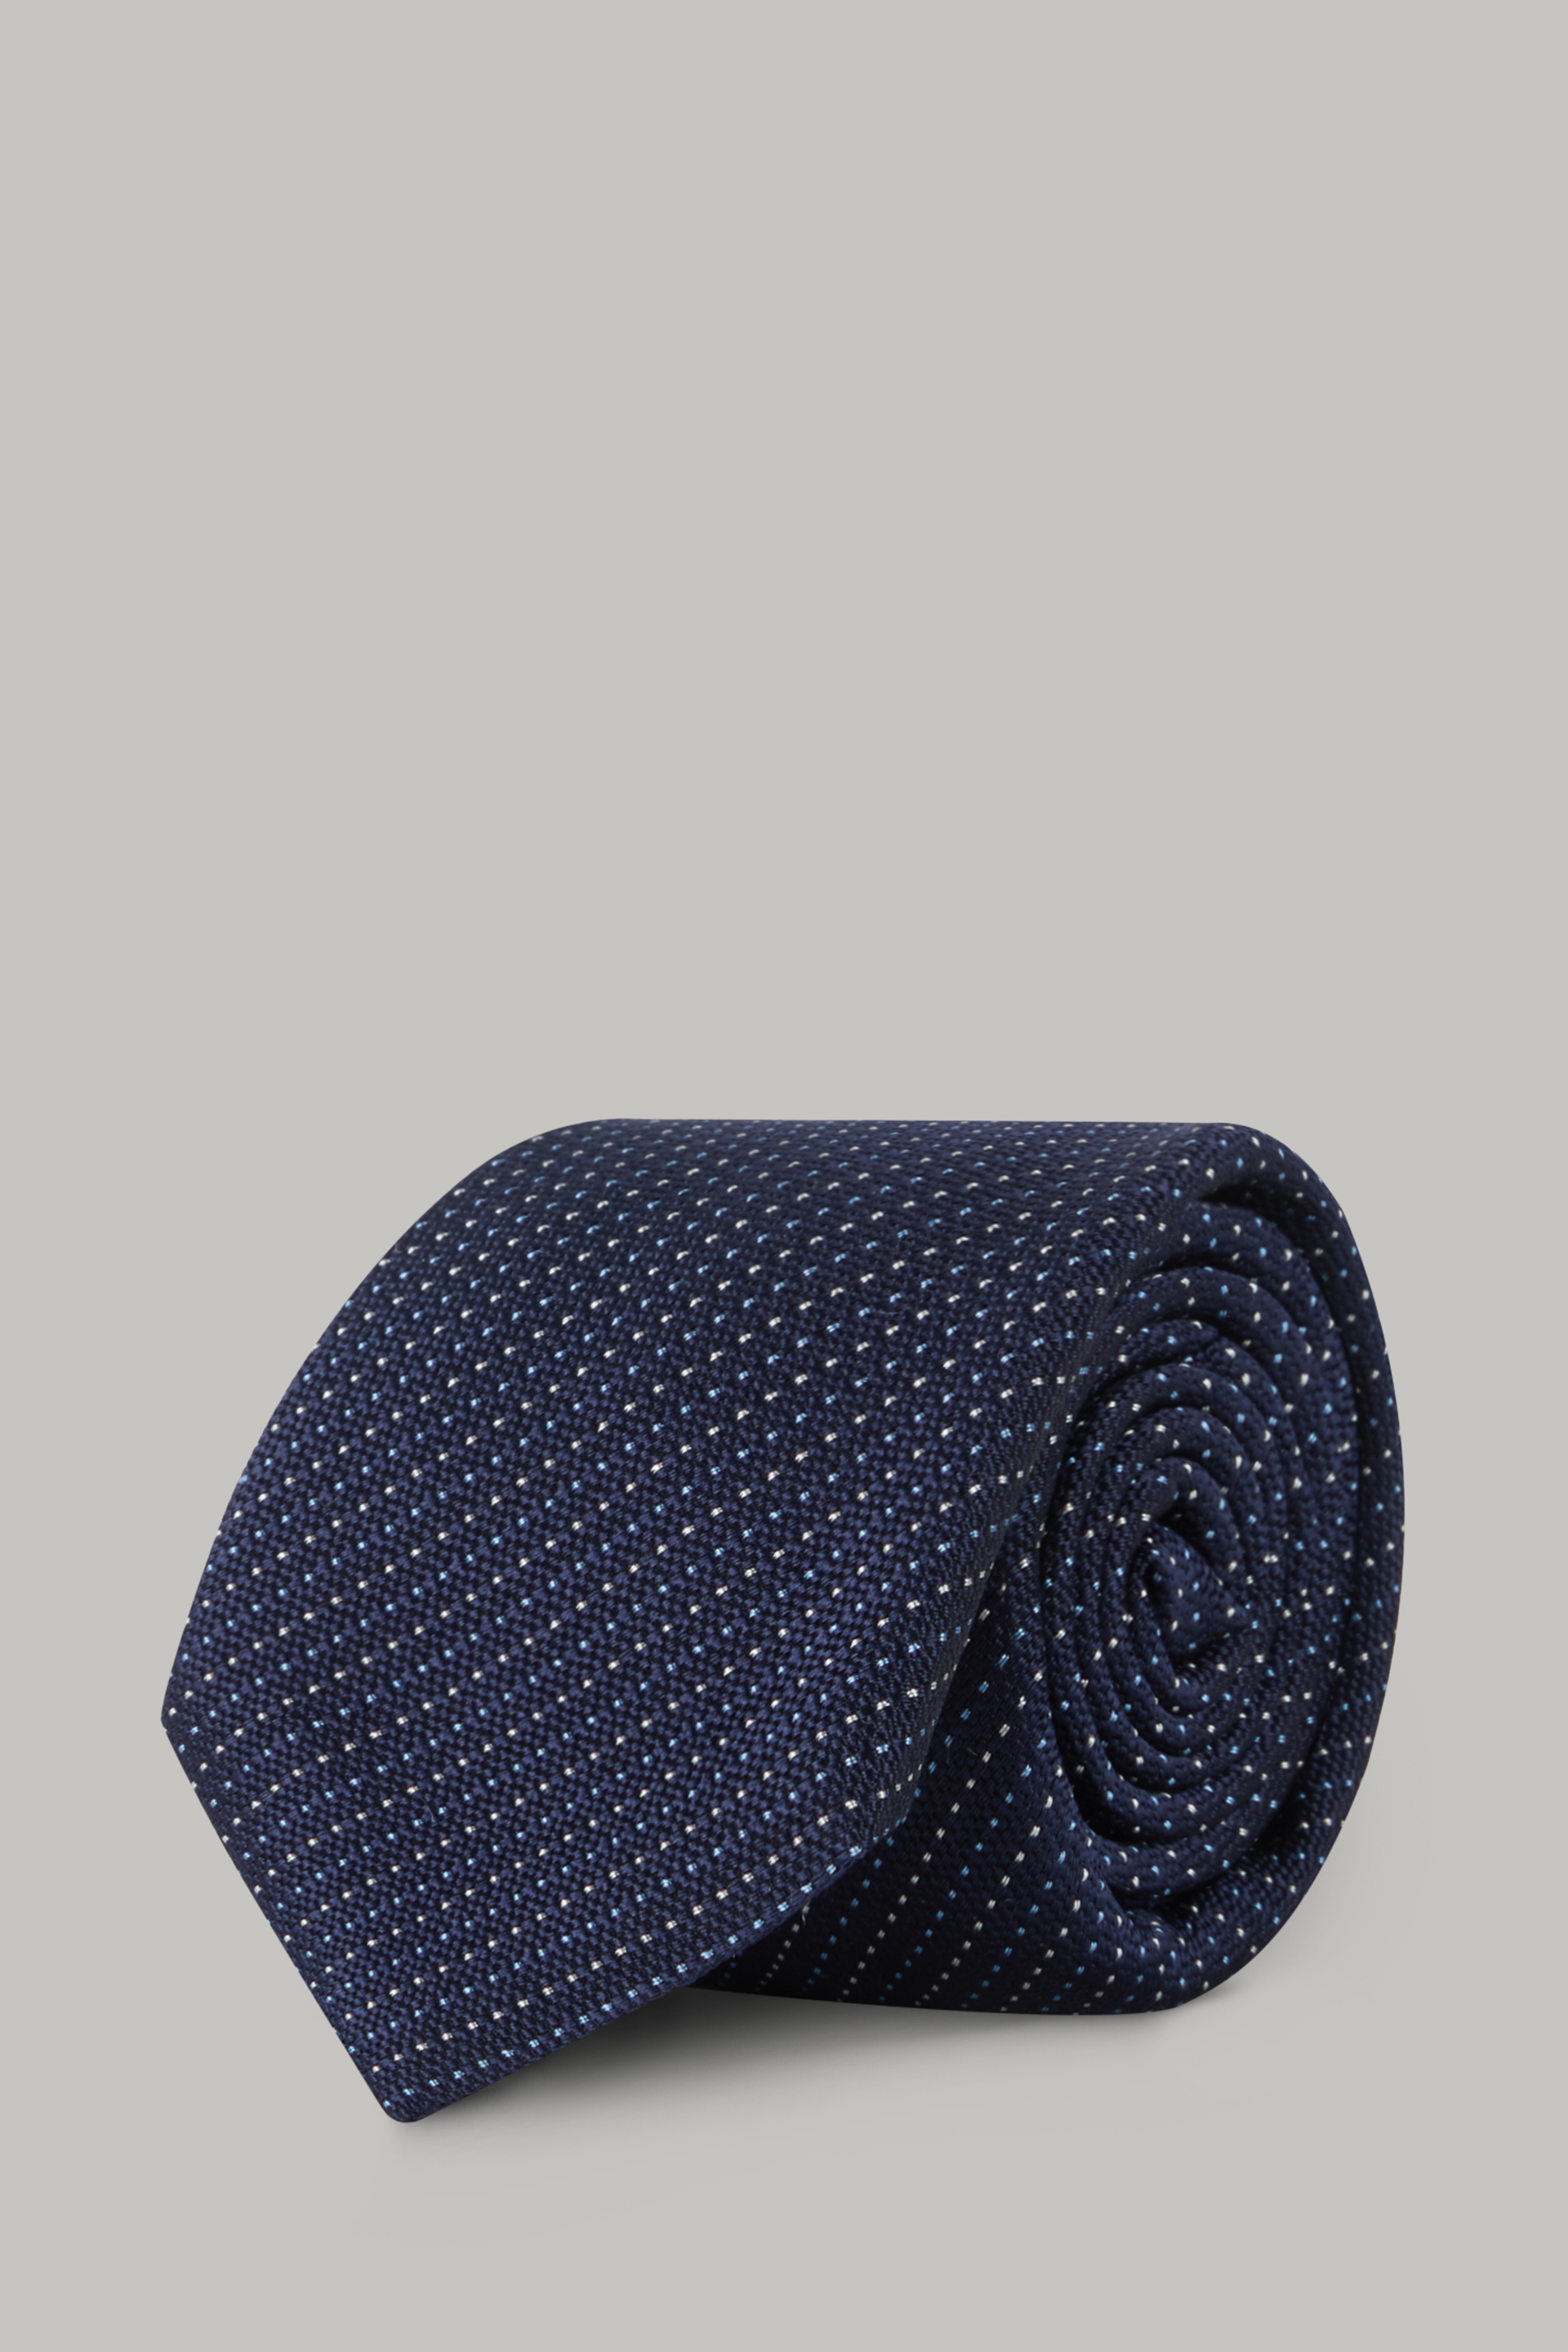 Boggi Uomo Accessori Cravatte e accessori Cravatte Cravatta Micro Motivo In Seta 